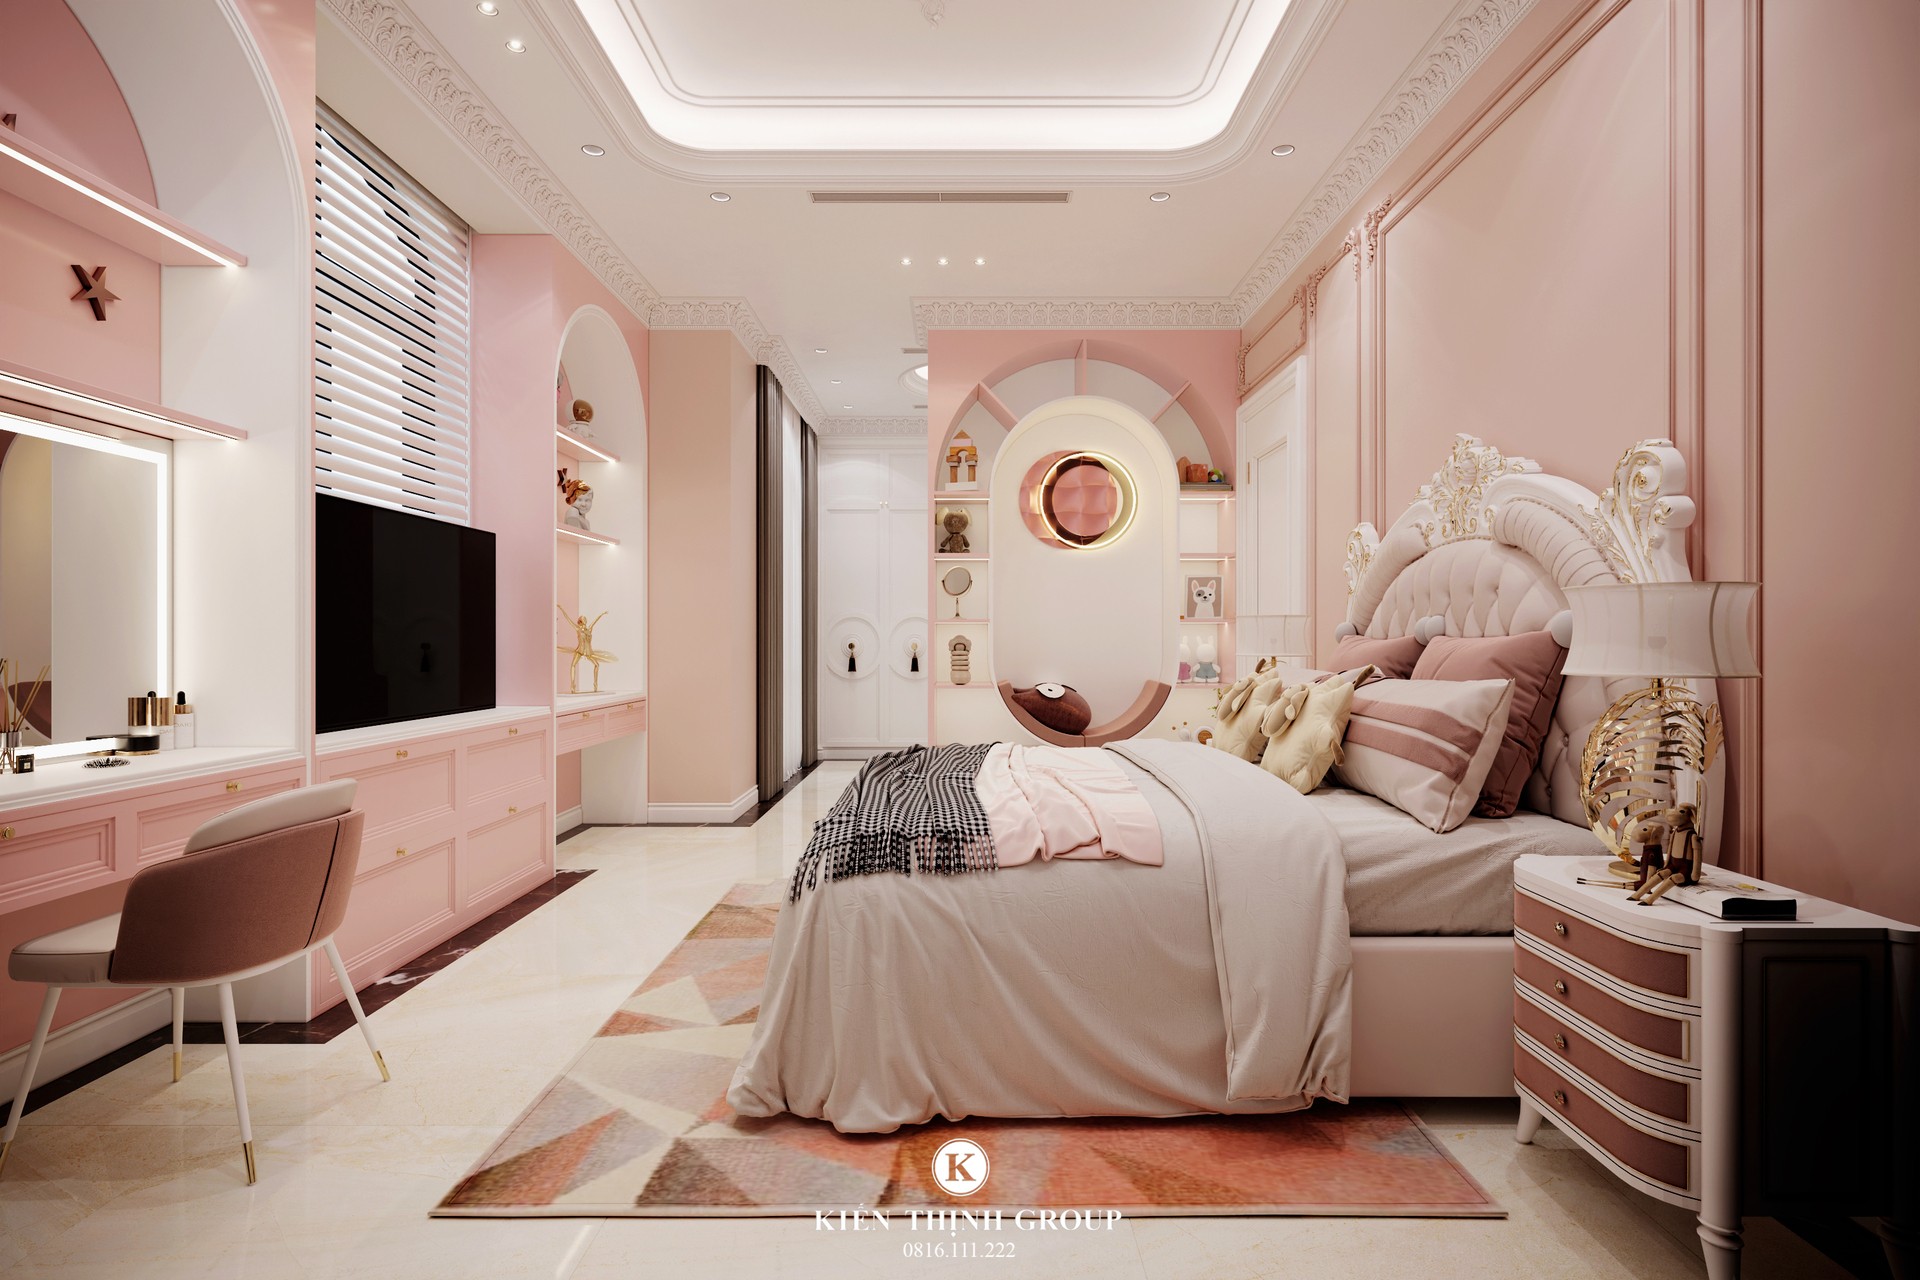 Không gian phòng ngủ với tone hồng pastel đầy ngọt ngào